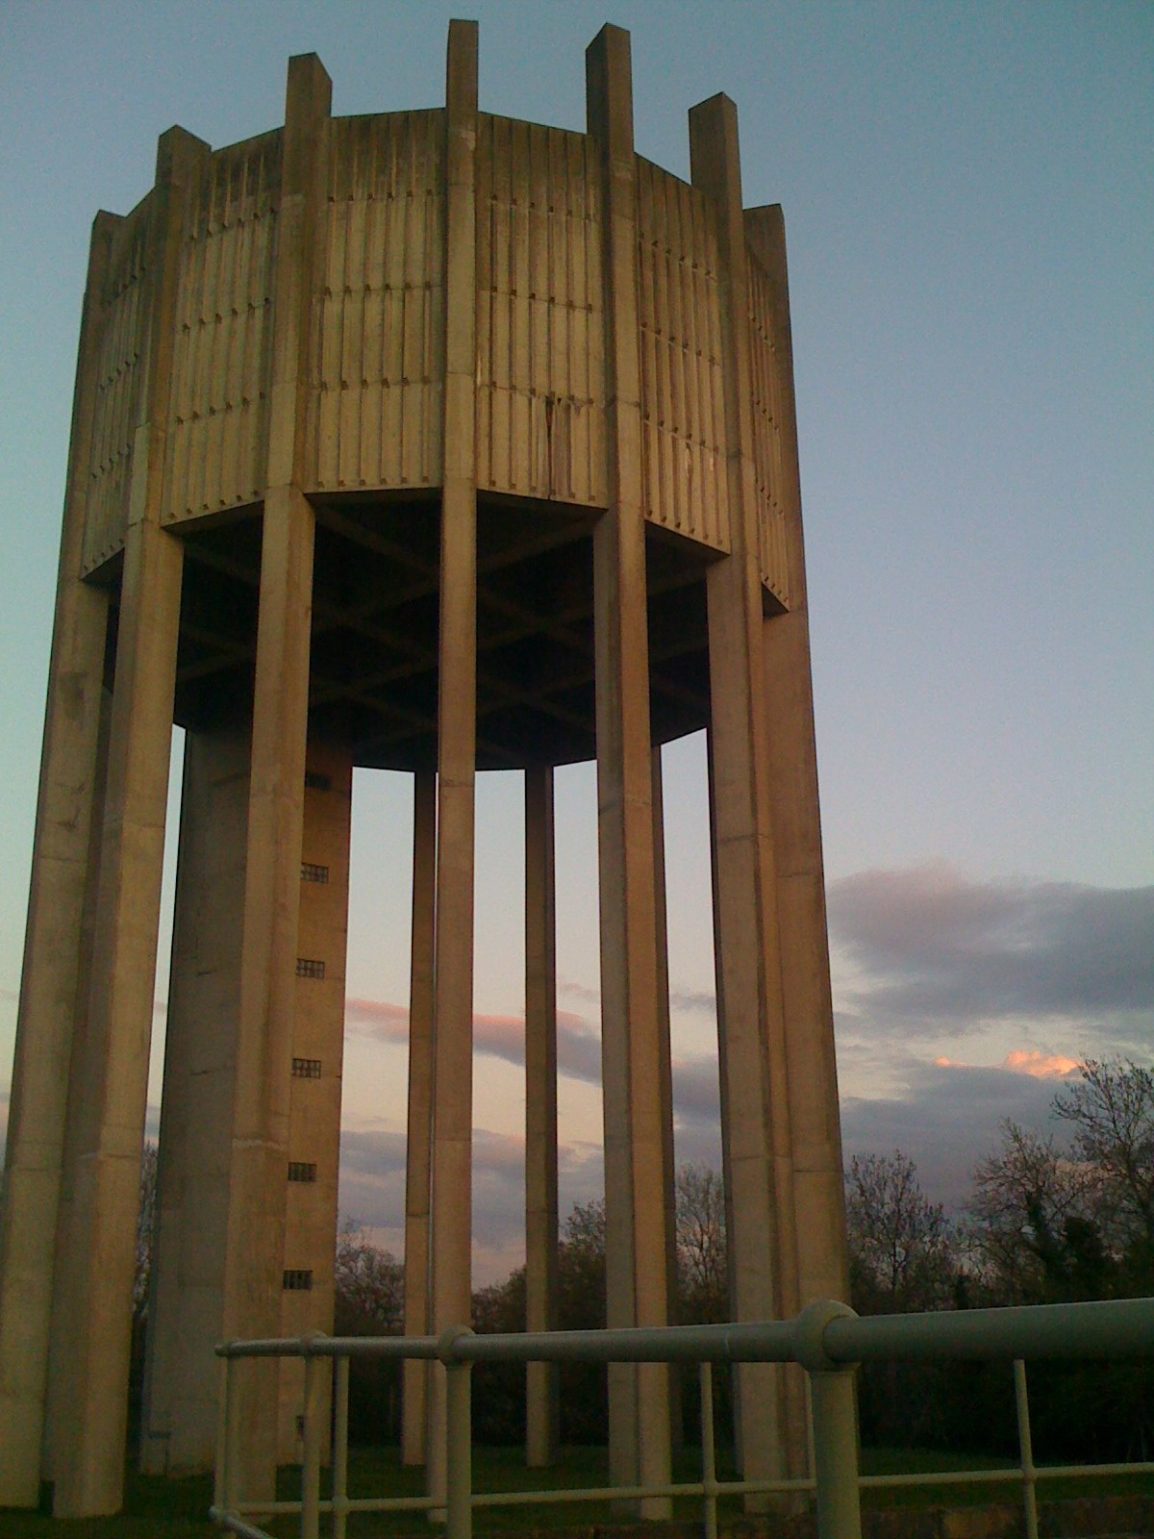 Minety Tower near Wootton Bassett